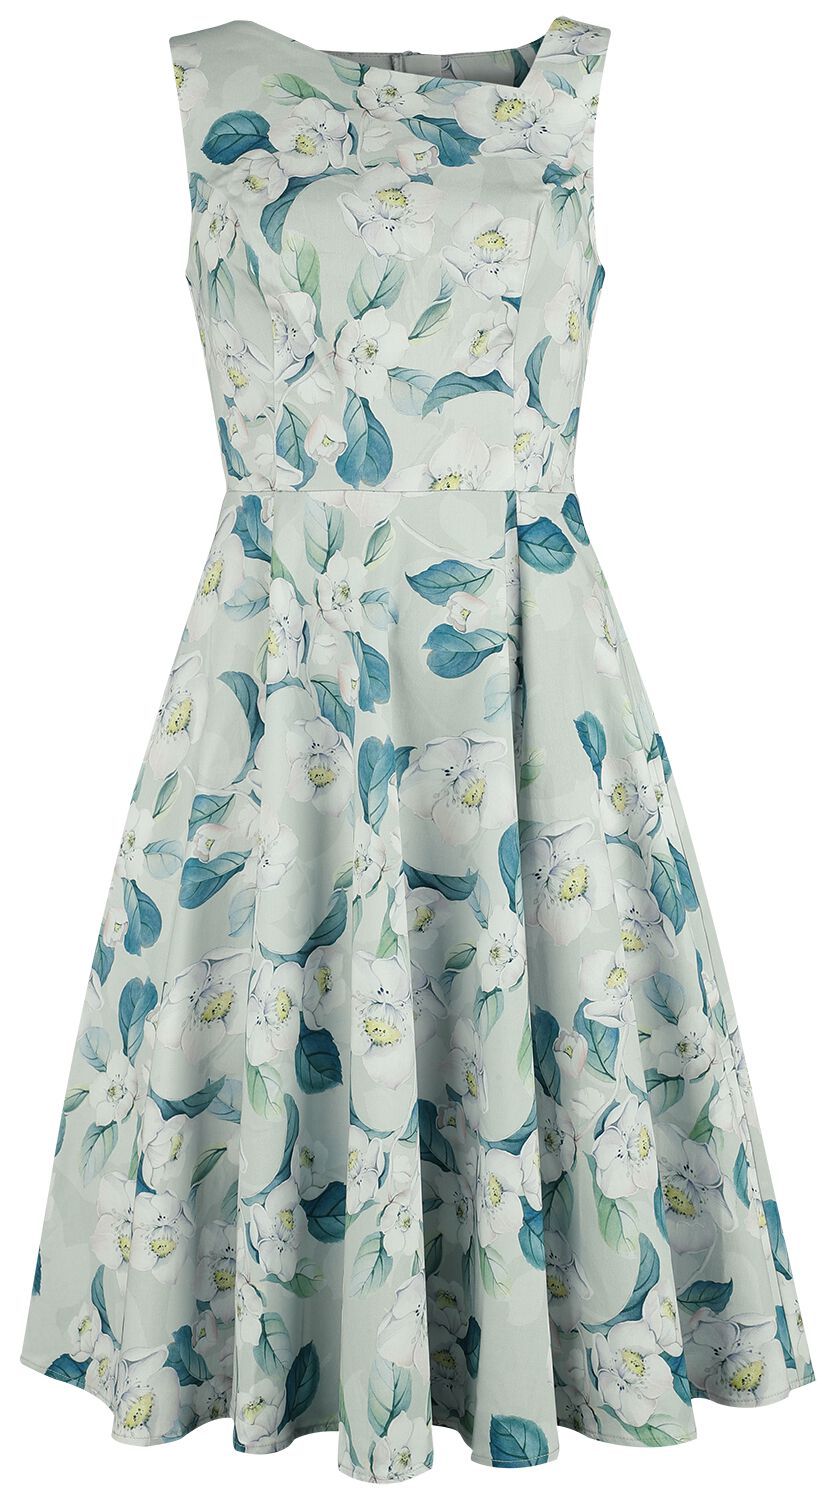 H&R London - Rockabilly Kleid knielang - Rey Floral Swing Dress - XS bis 4XL - für Damen - Größe L - grün/weiß